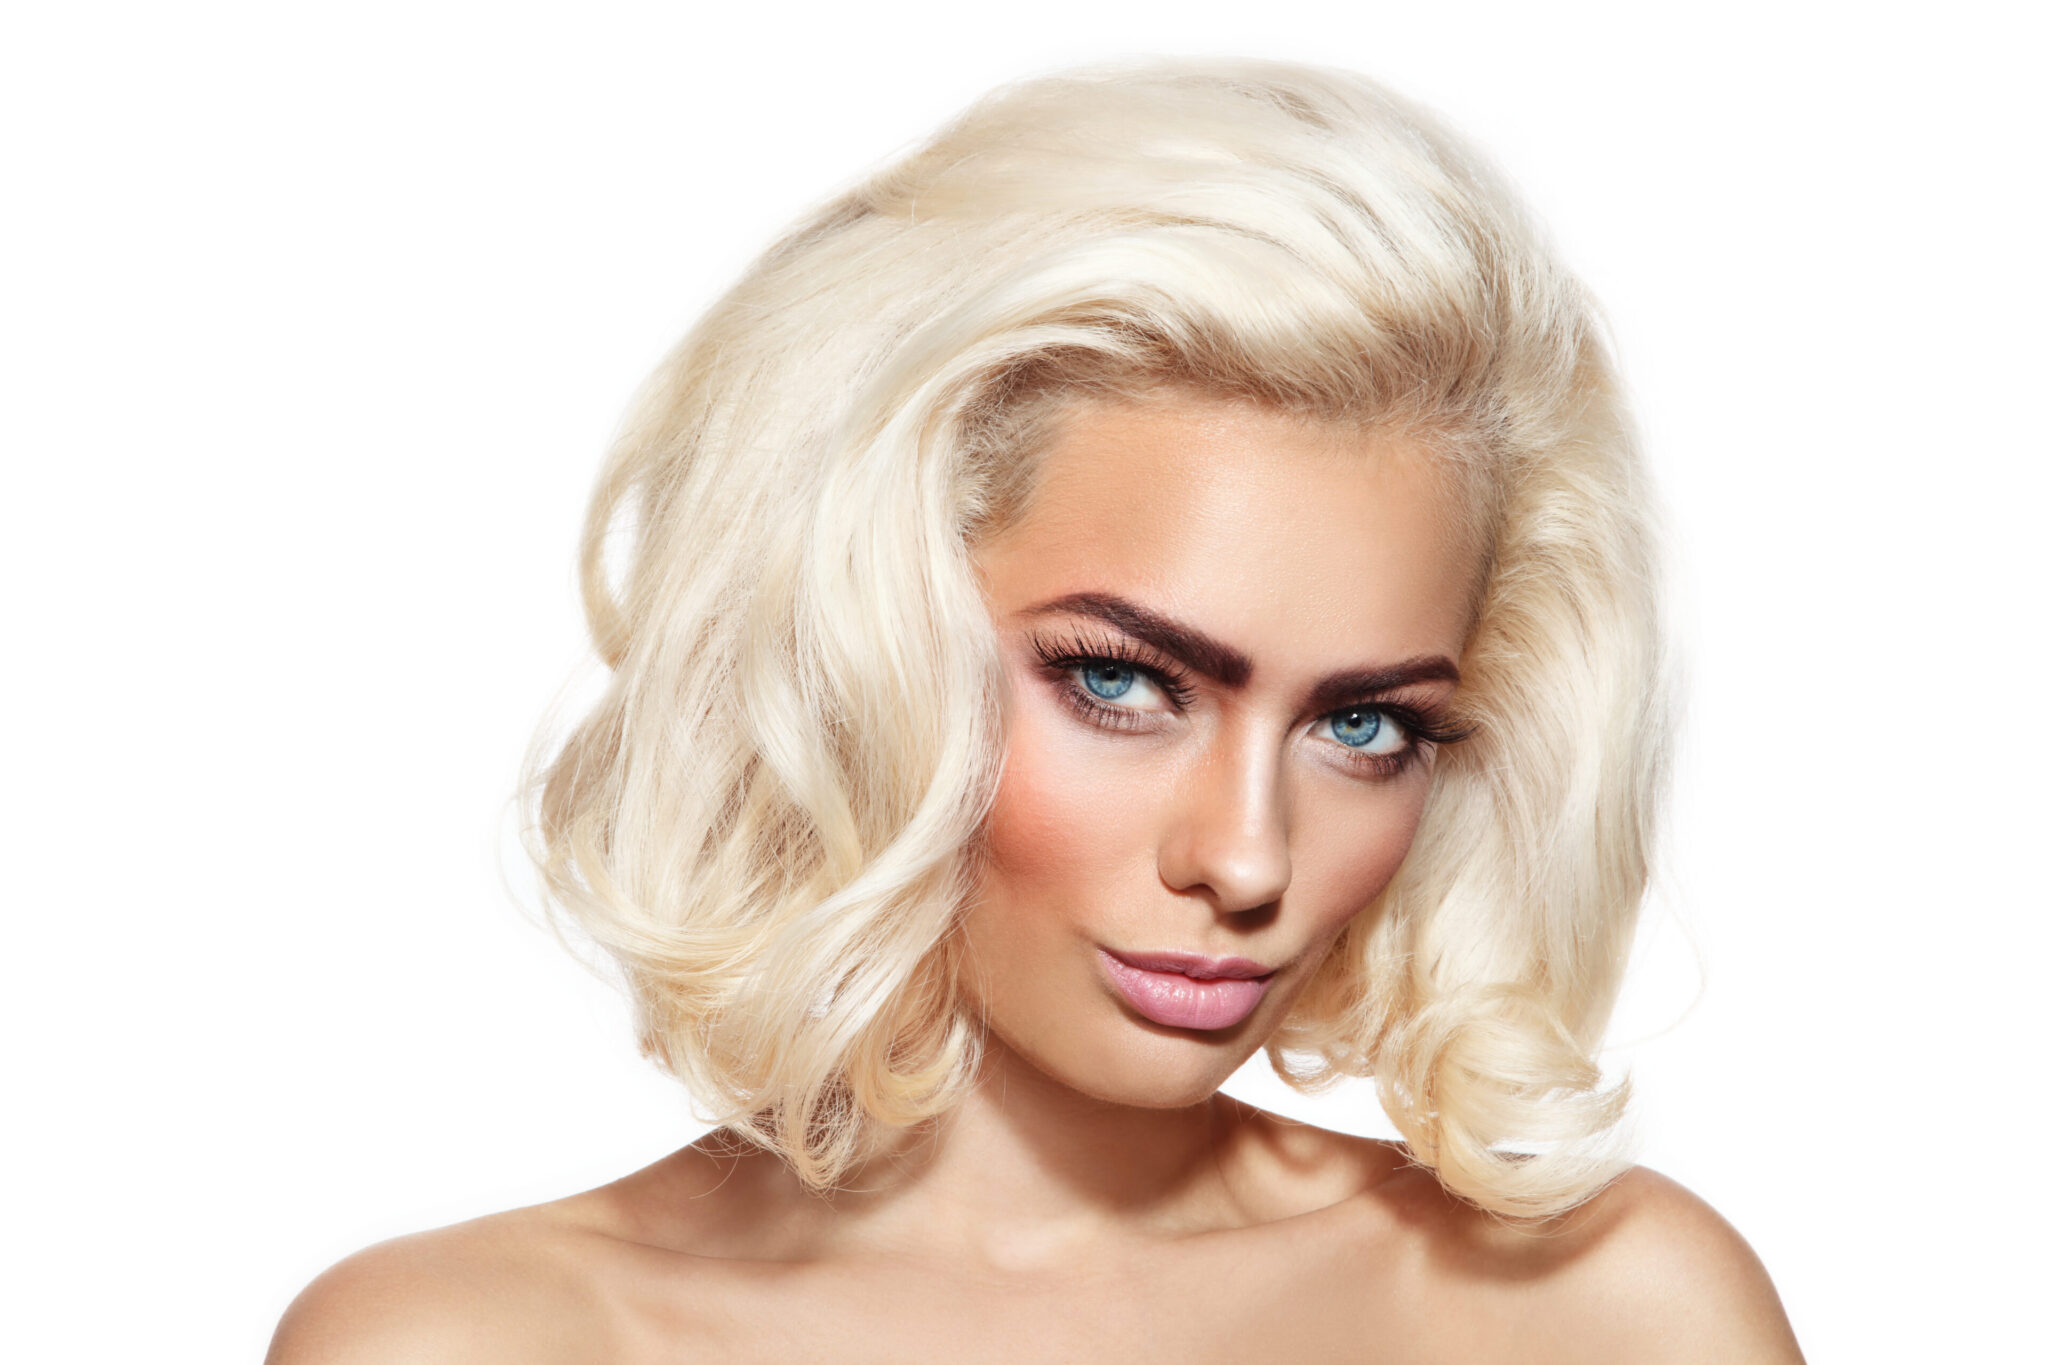 10. Platinum Blonde Elf Hair Inspiration - wide 4